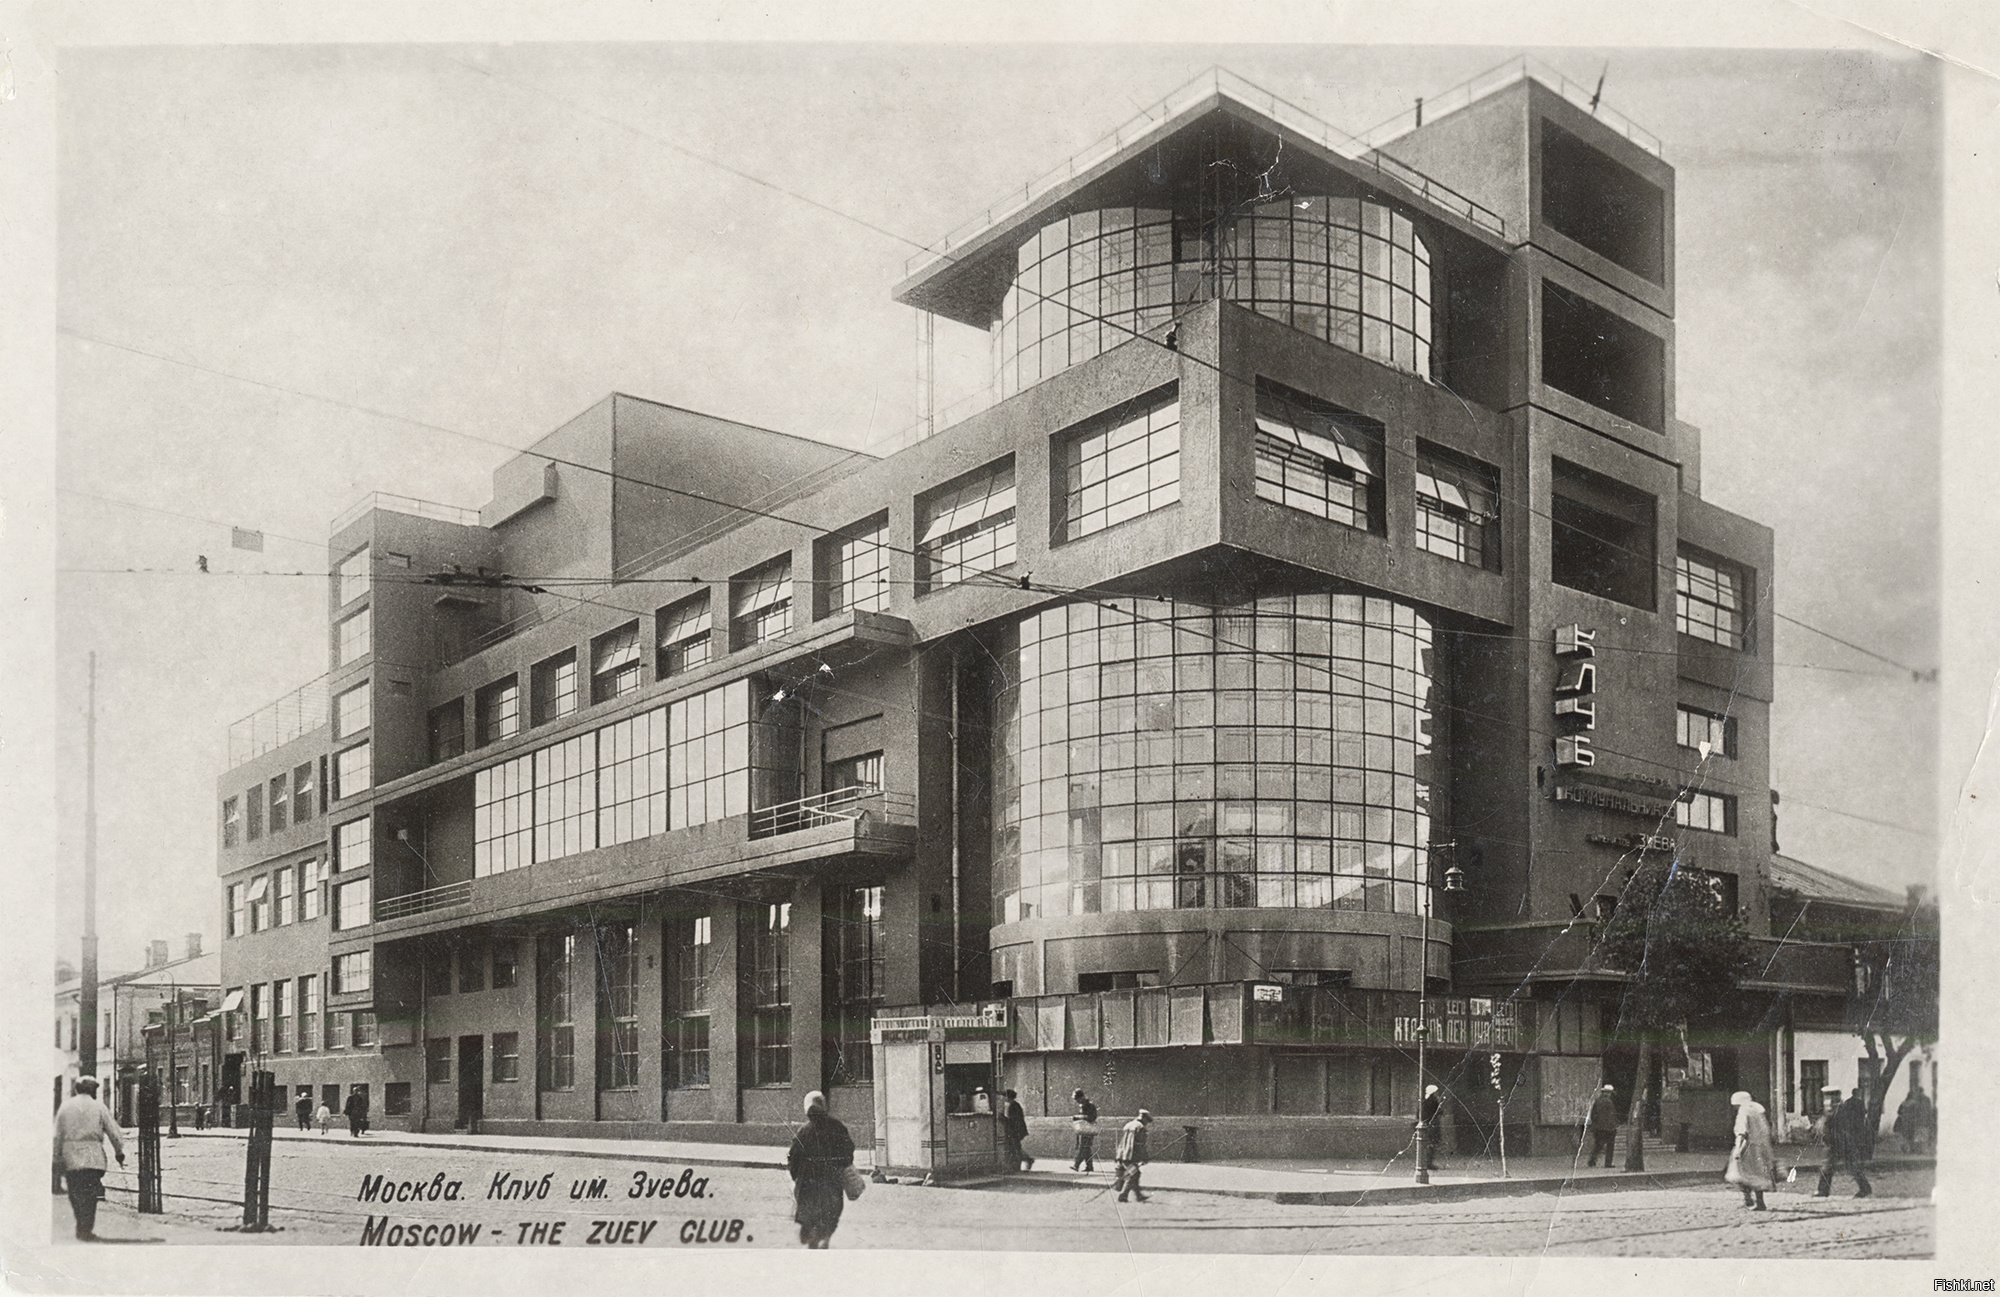 Дом культуры имени Зуева, Москва. 1927–1929. Архитектор Илья голосов